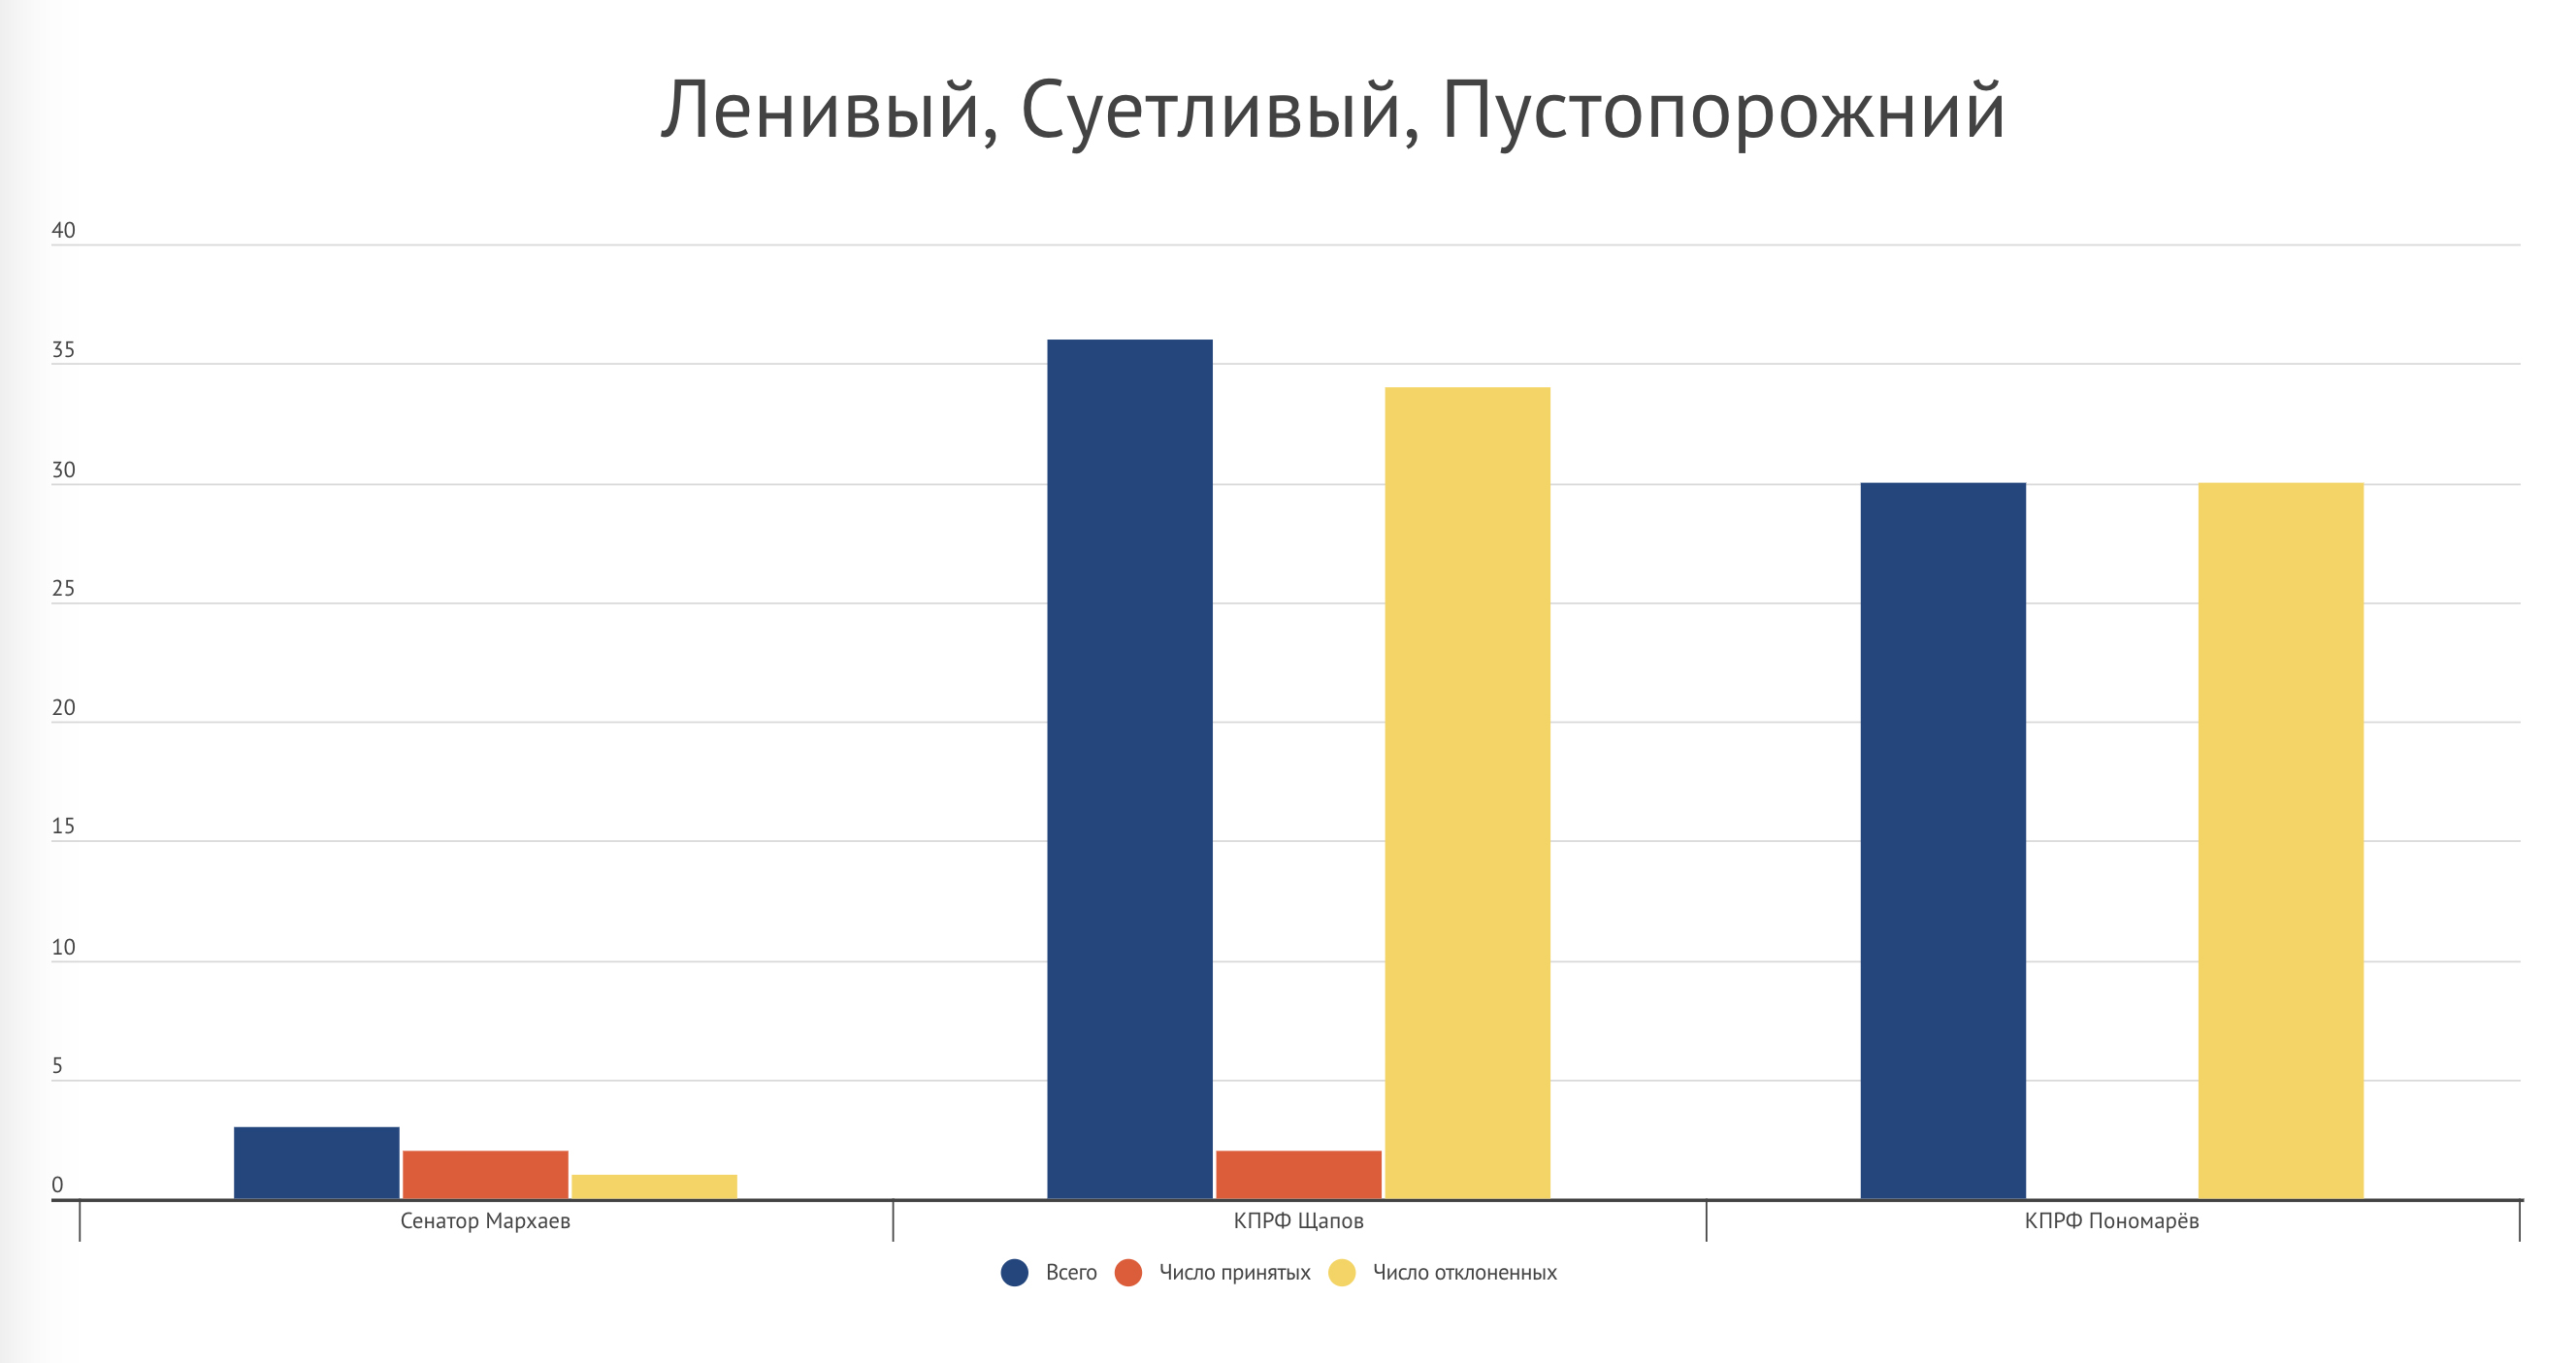 Иркутская область – график 4